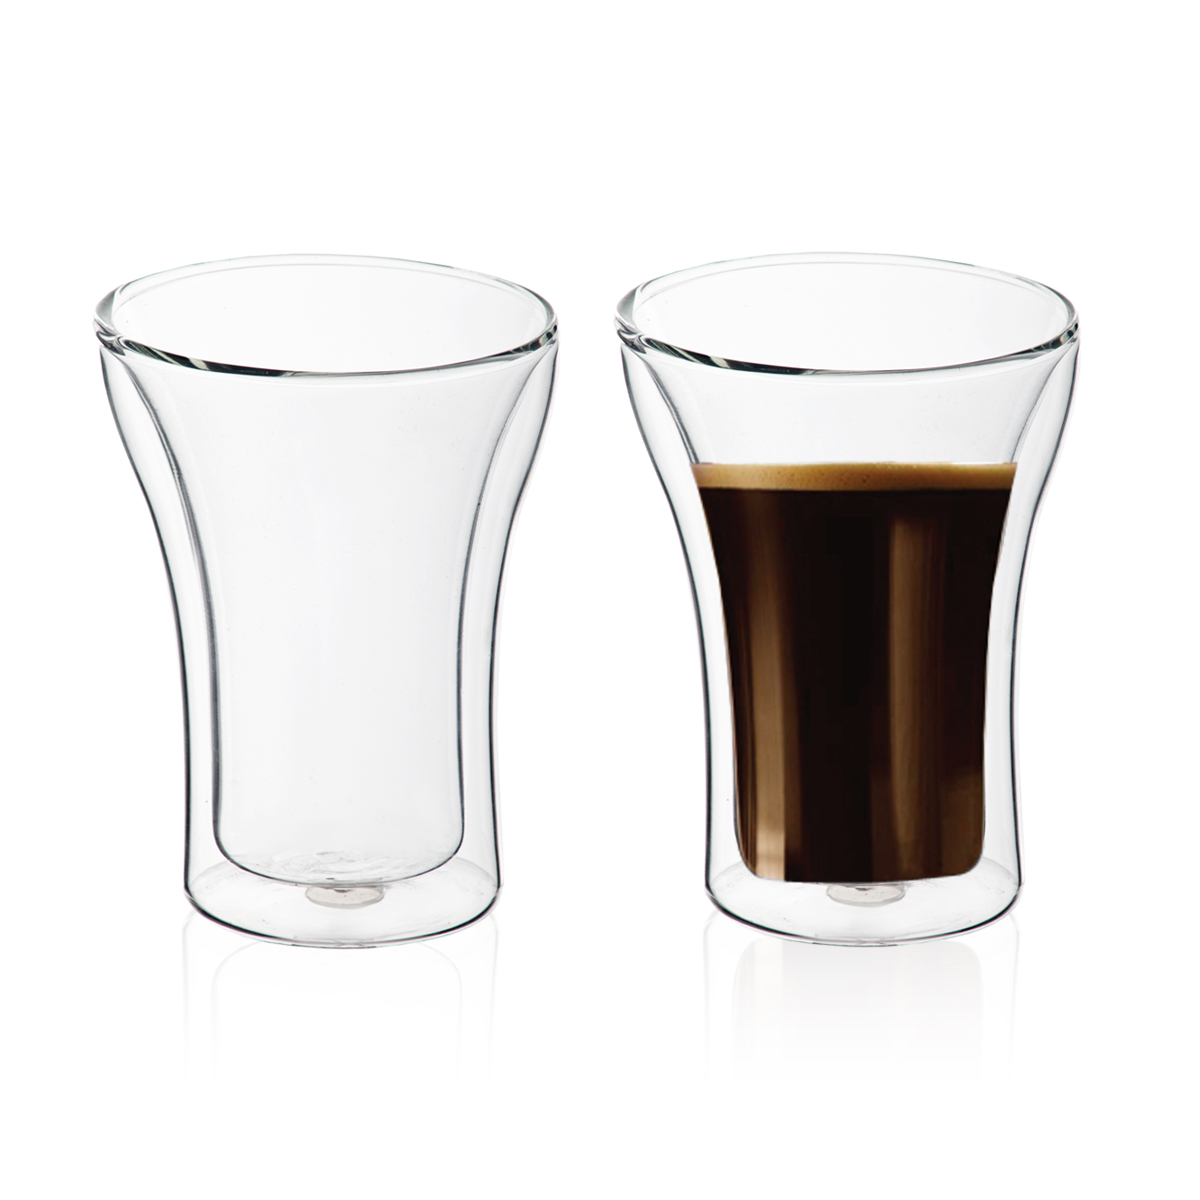 ויאטנם - זוג כוסות זכוכית נפח 350 מ